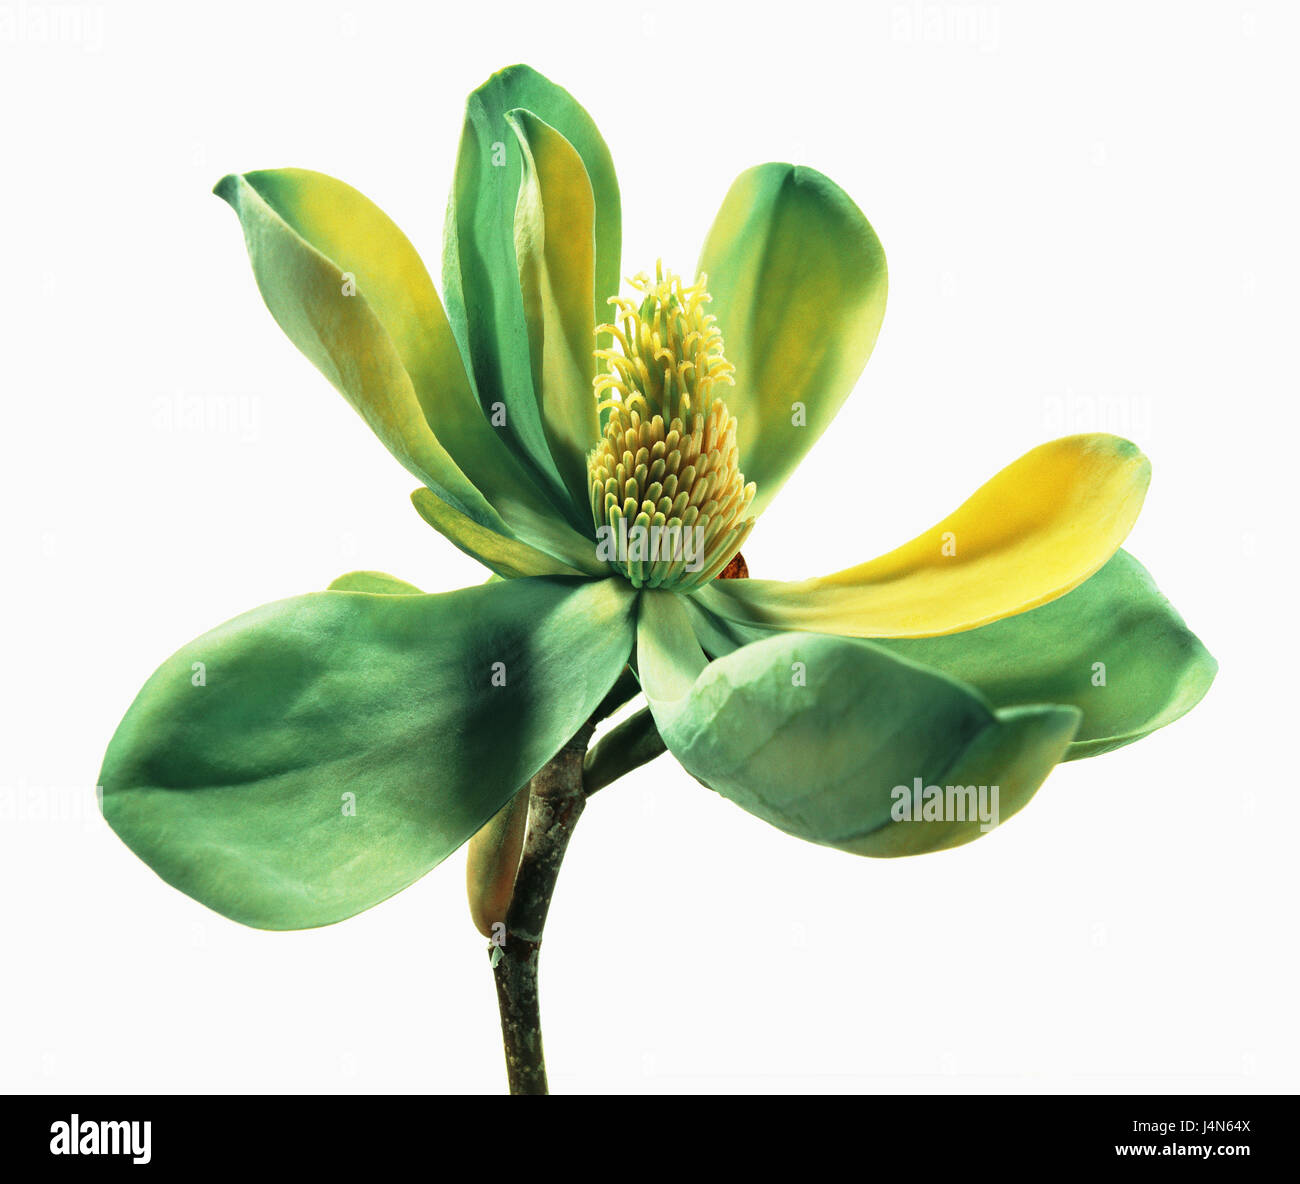 Magnolia, nombre: 'Moegi Dori' (amarillo verde de aves), Foto de stock